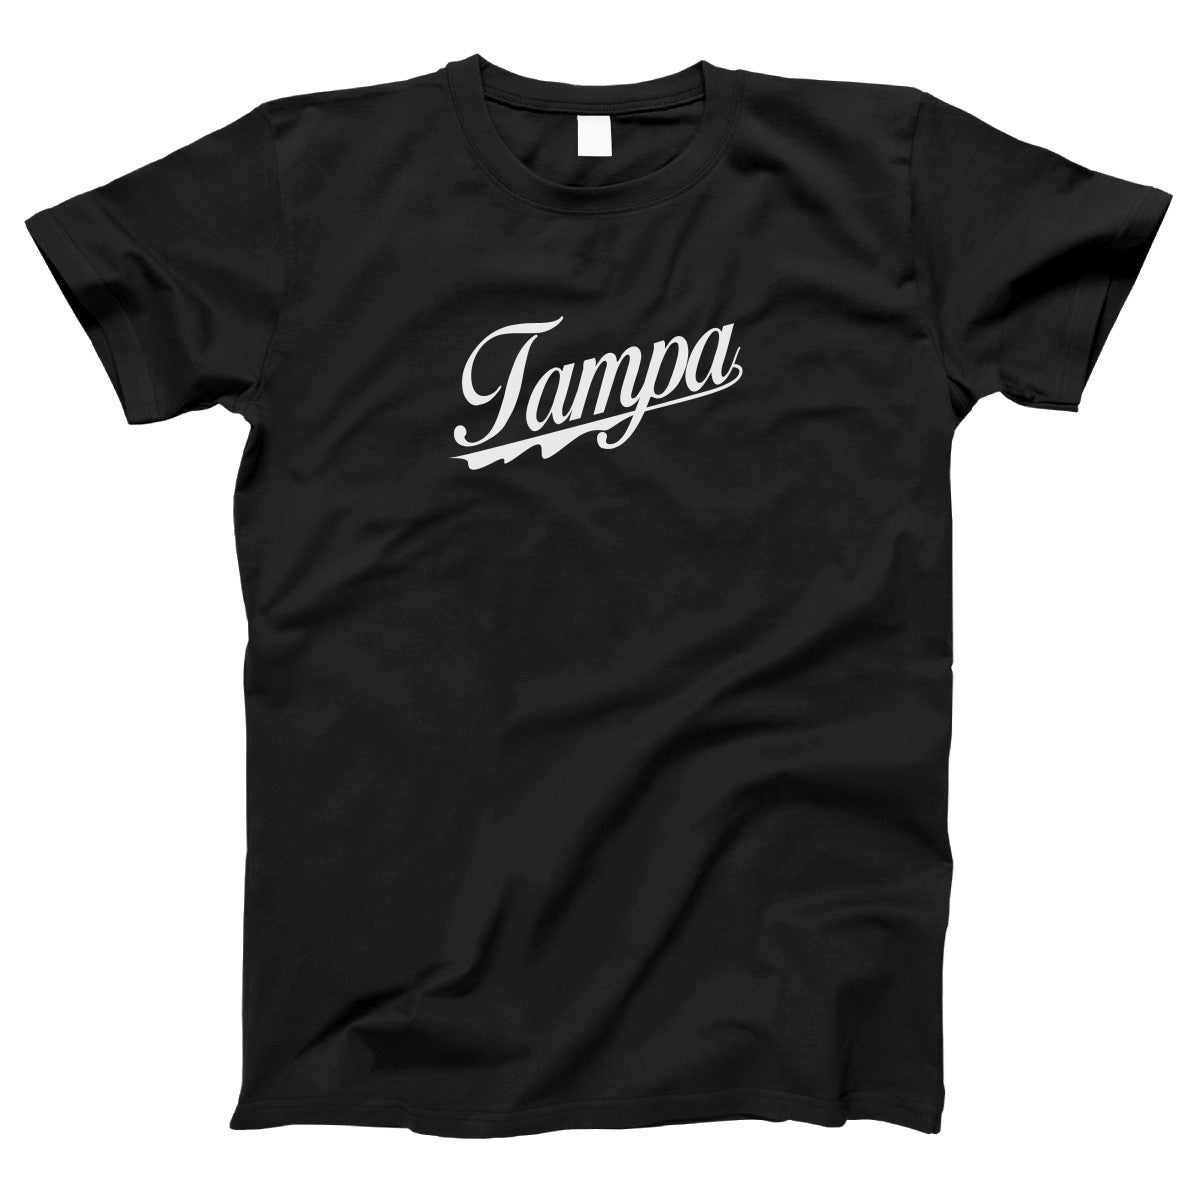 Tampa Women's T-shirt